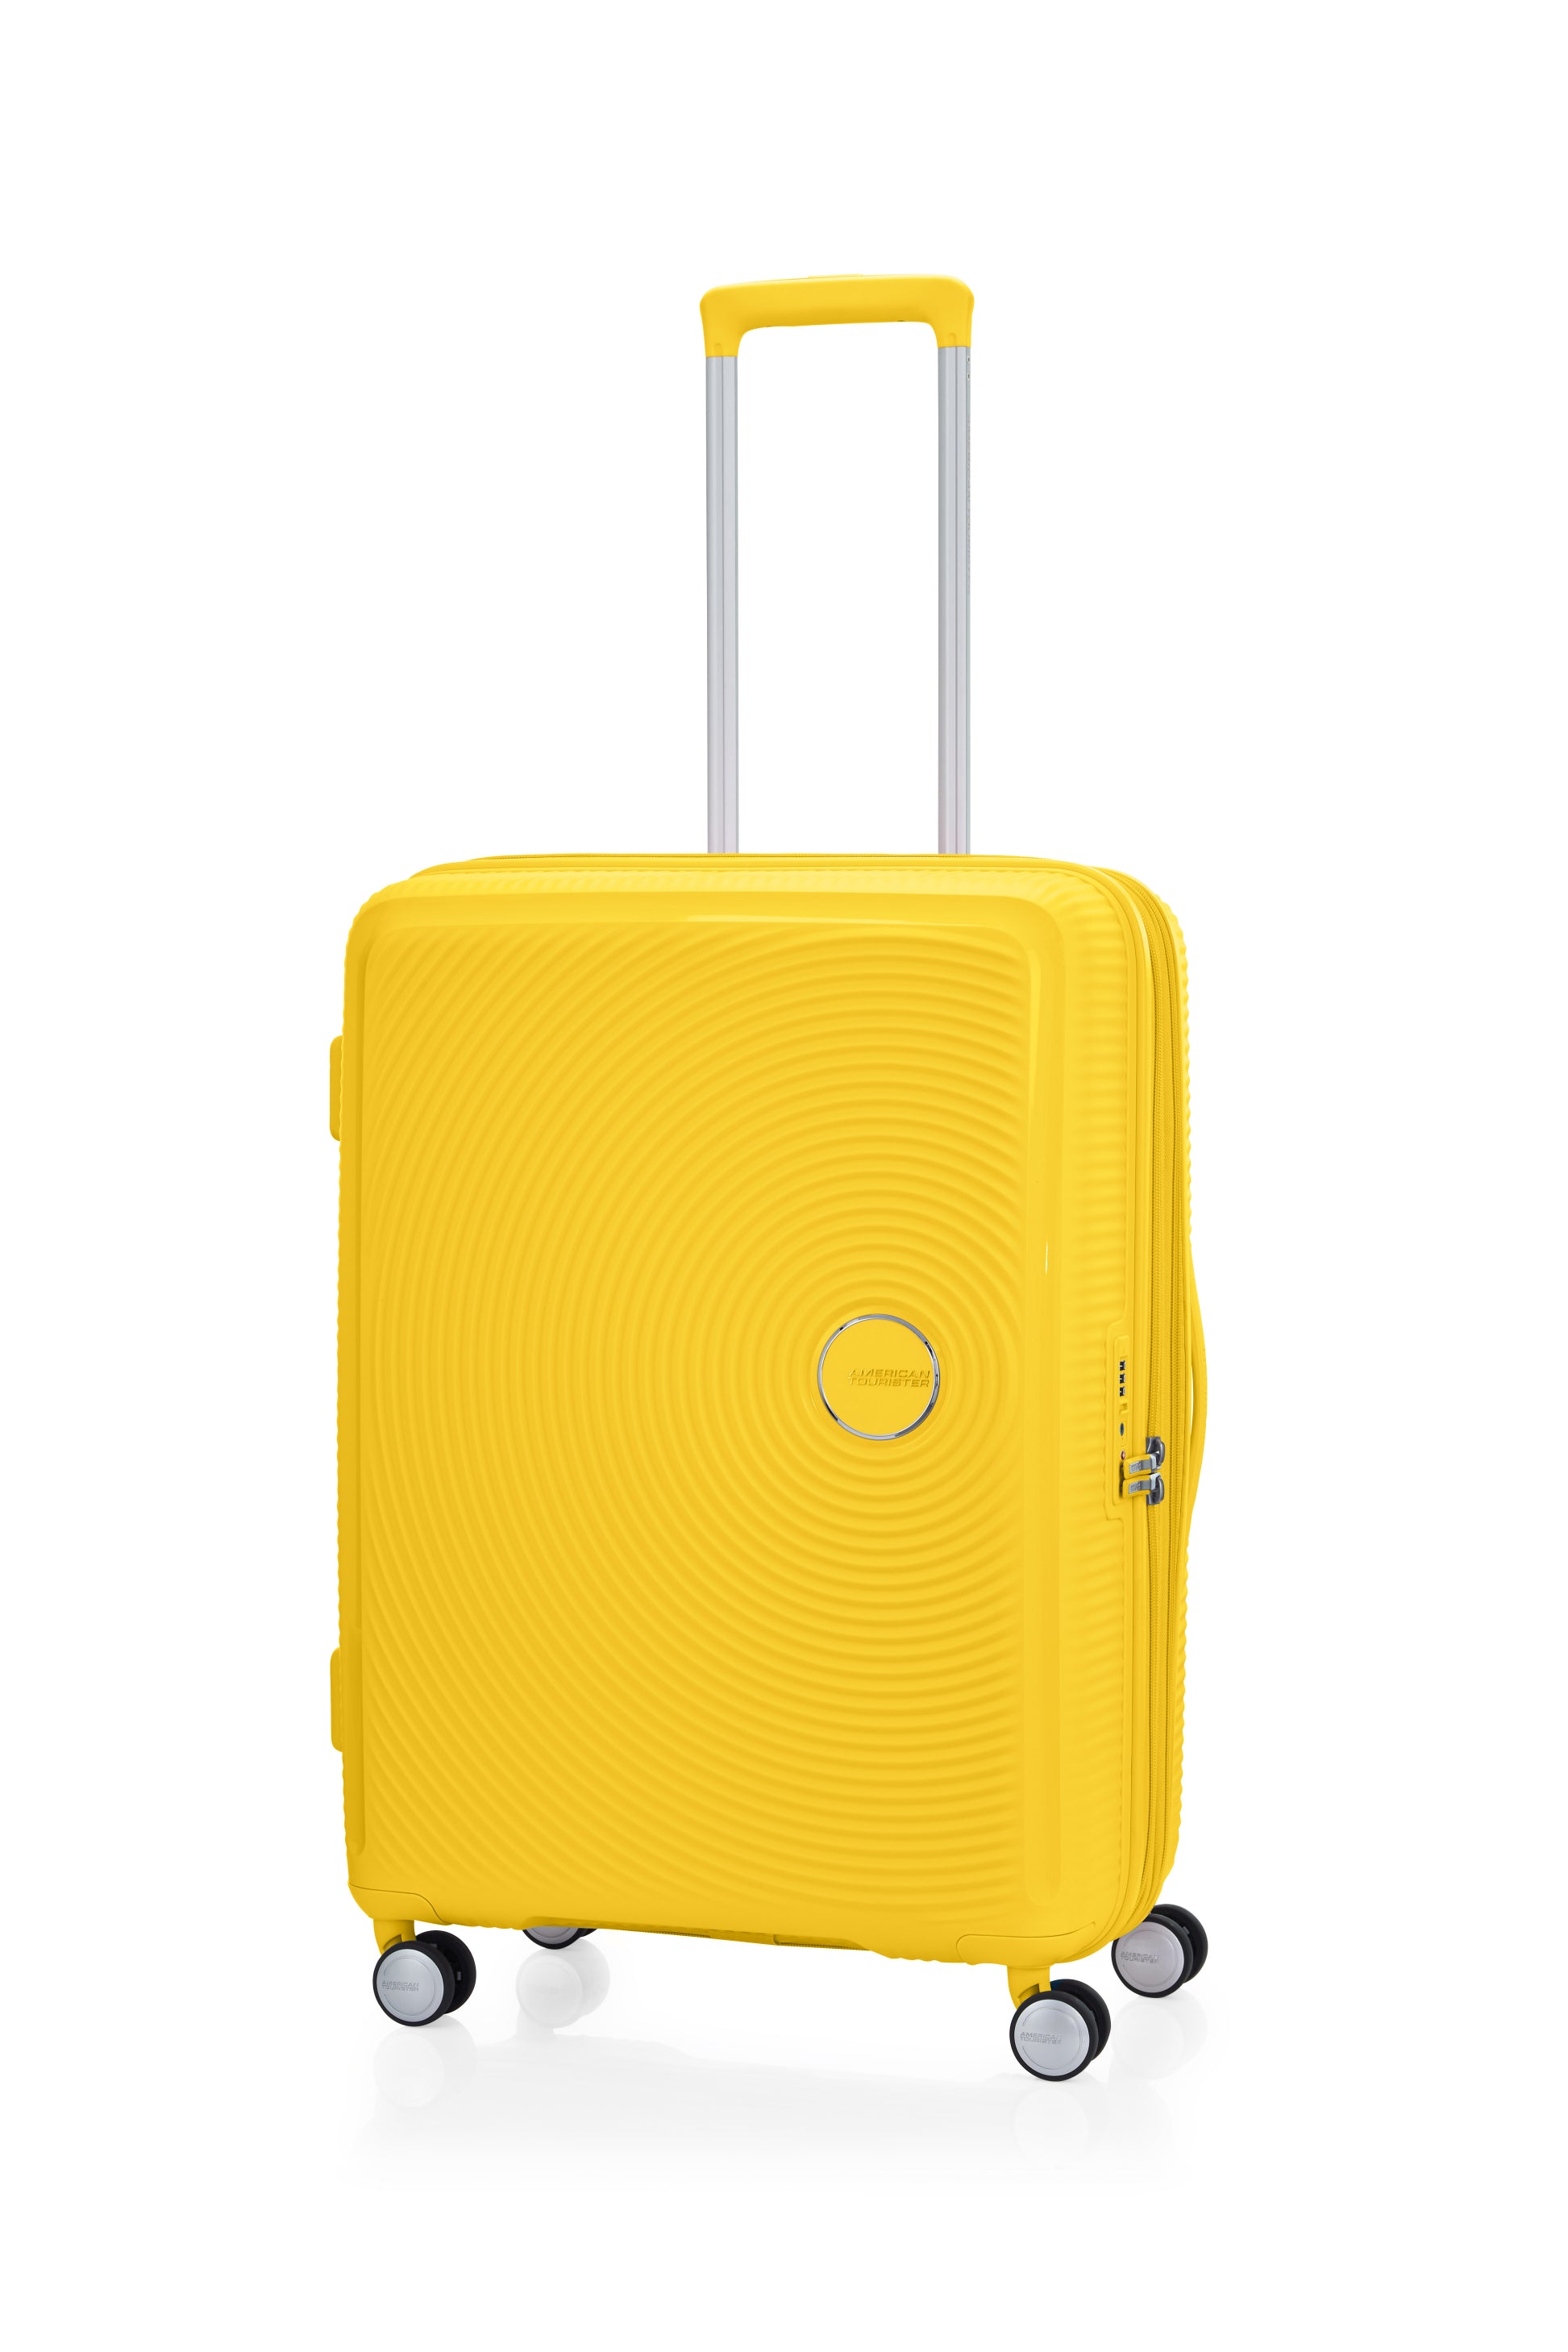 American Tourister - Curio 2.0 69cm Medium Suitcase - Golden Yellow-4